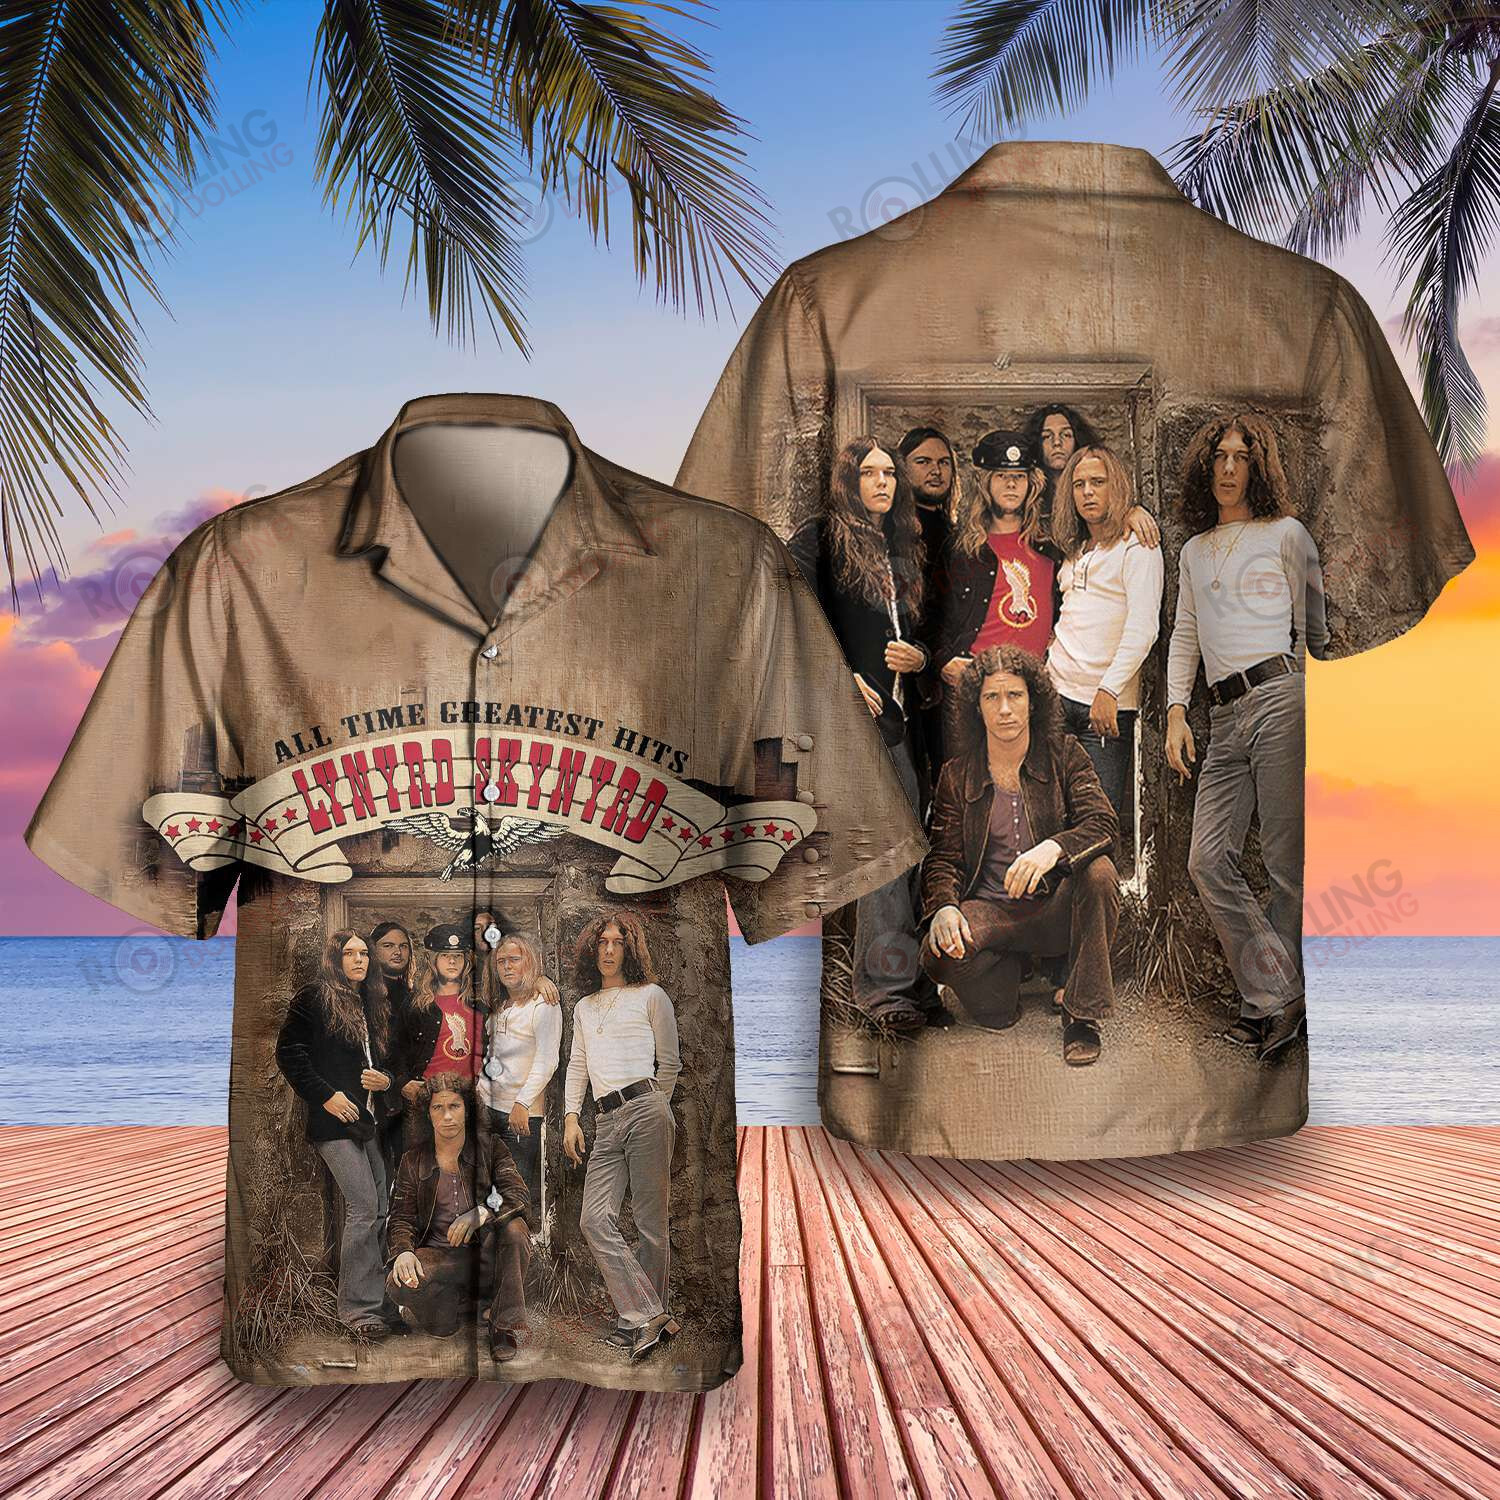 HOT Lynyrd Skynyrd Band Greatest Hits Hawaii Shirt2